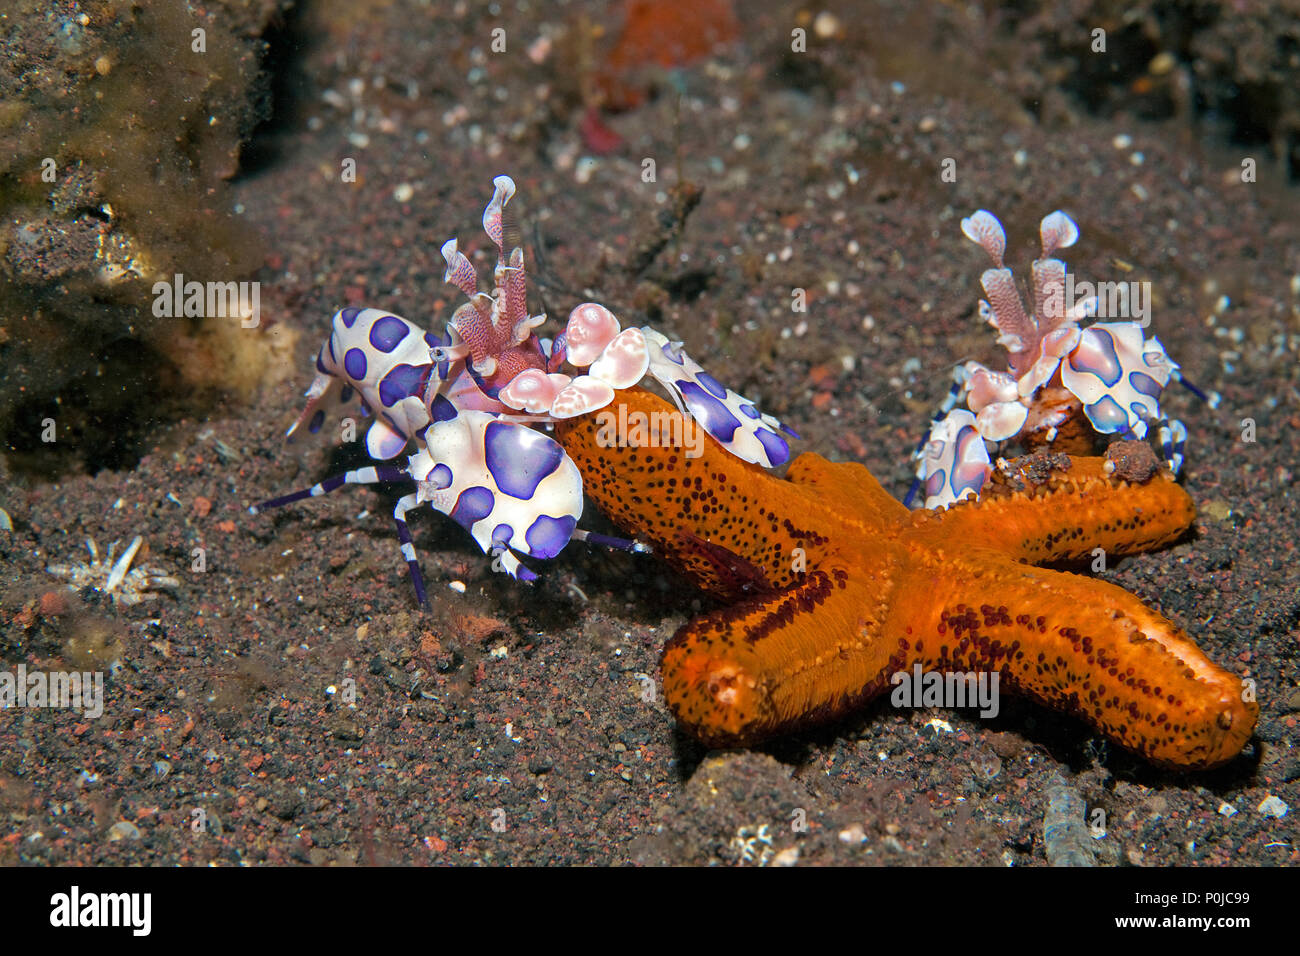 Deux crevettes arlequins (Hymenocera elegans) se nourrissant de starfish, Bali, Indonésie Banque D'Images